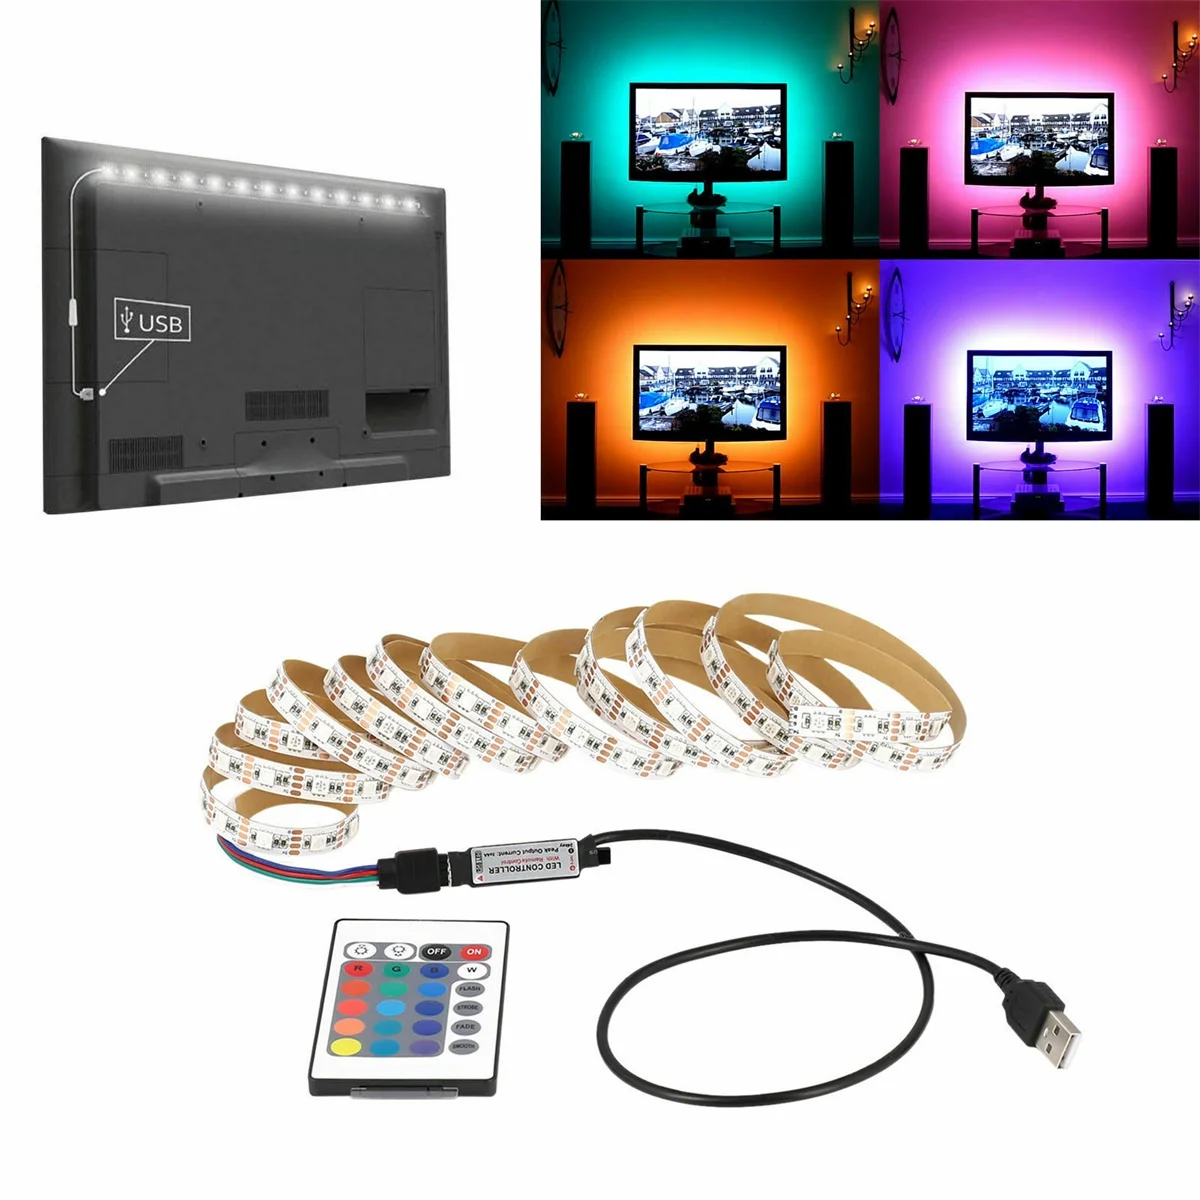 1 M TV rétro-éclairage USB DEL Stripe Lumière Barre Bandes Télé Blanc